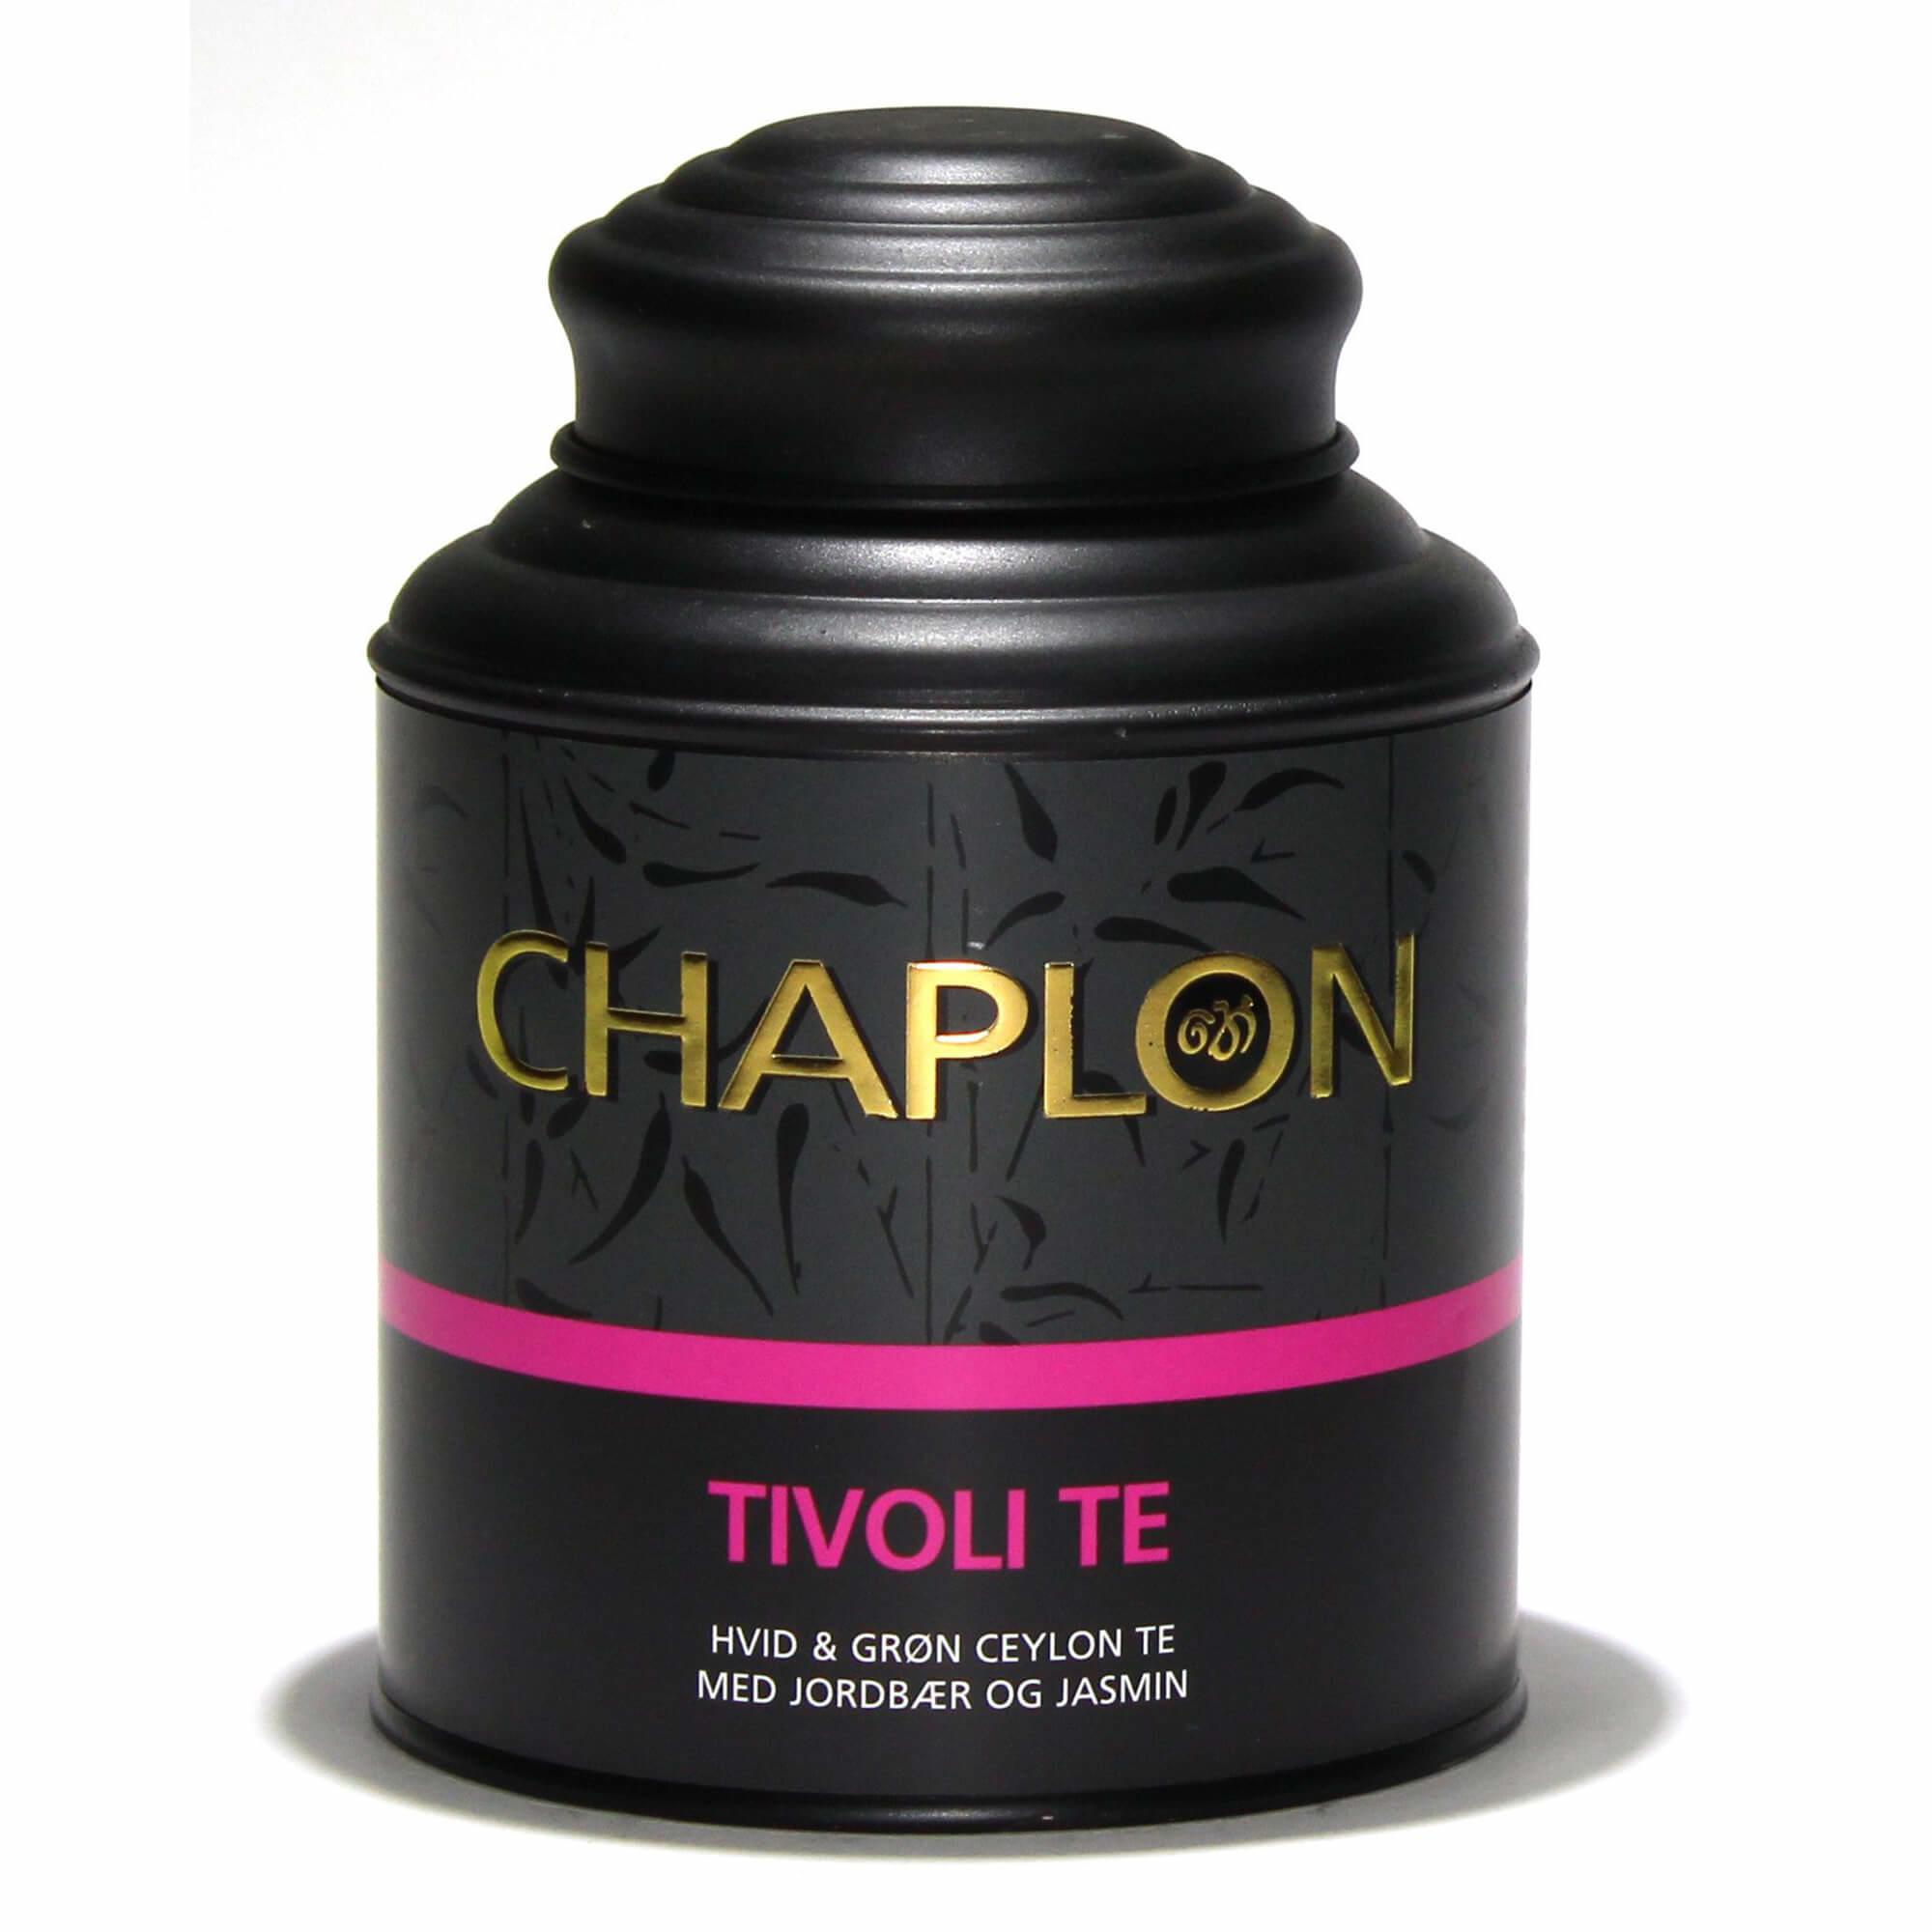 Chaplon Tivoli Te - 160 gram dåse thumbnail